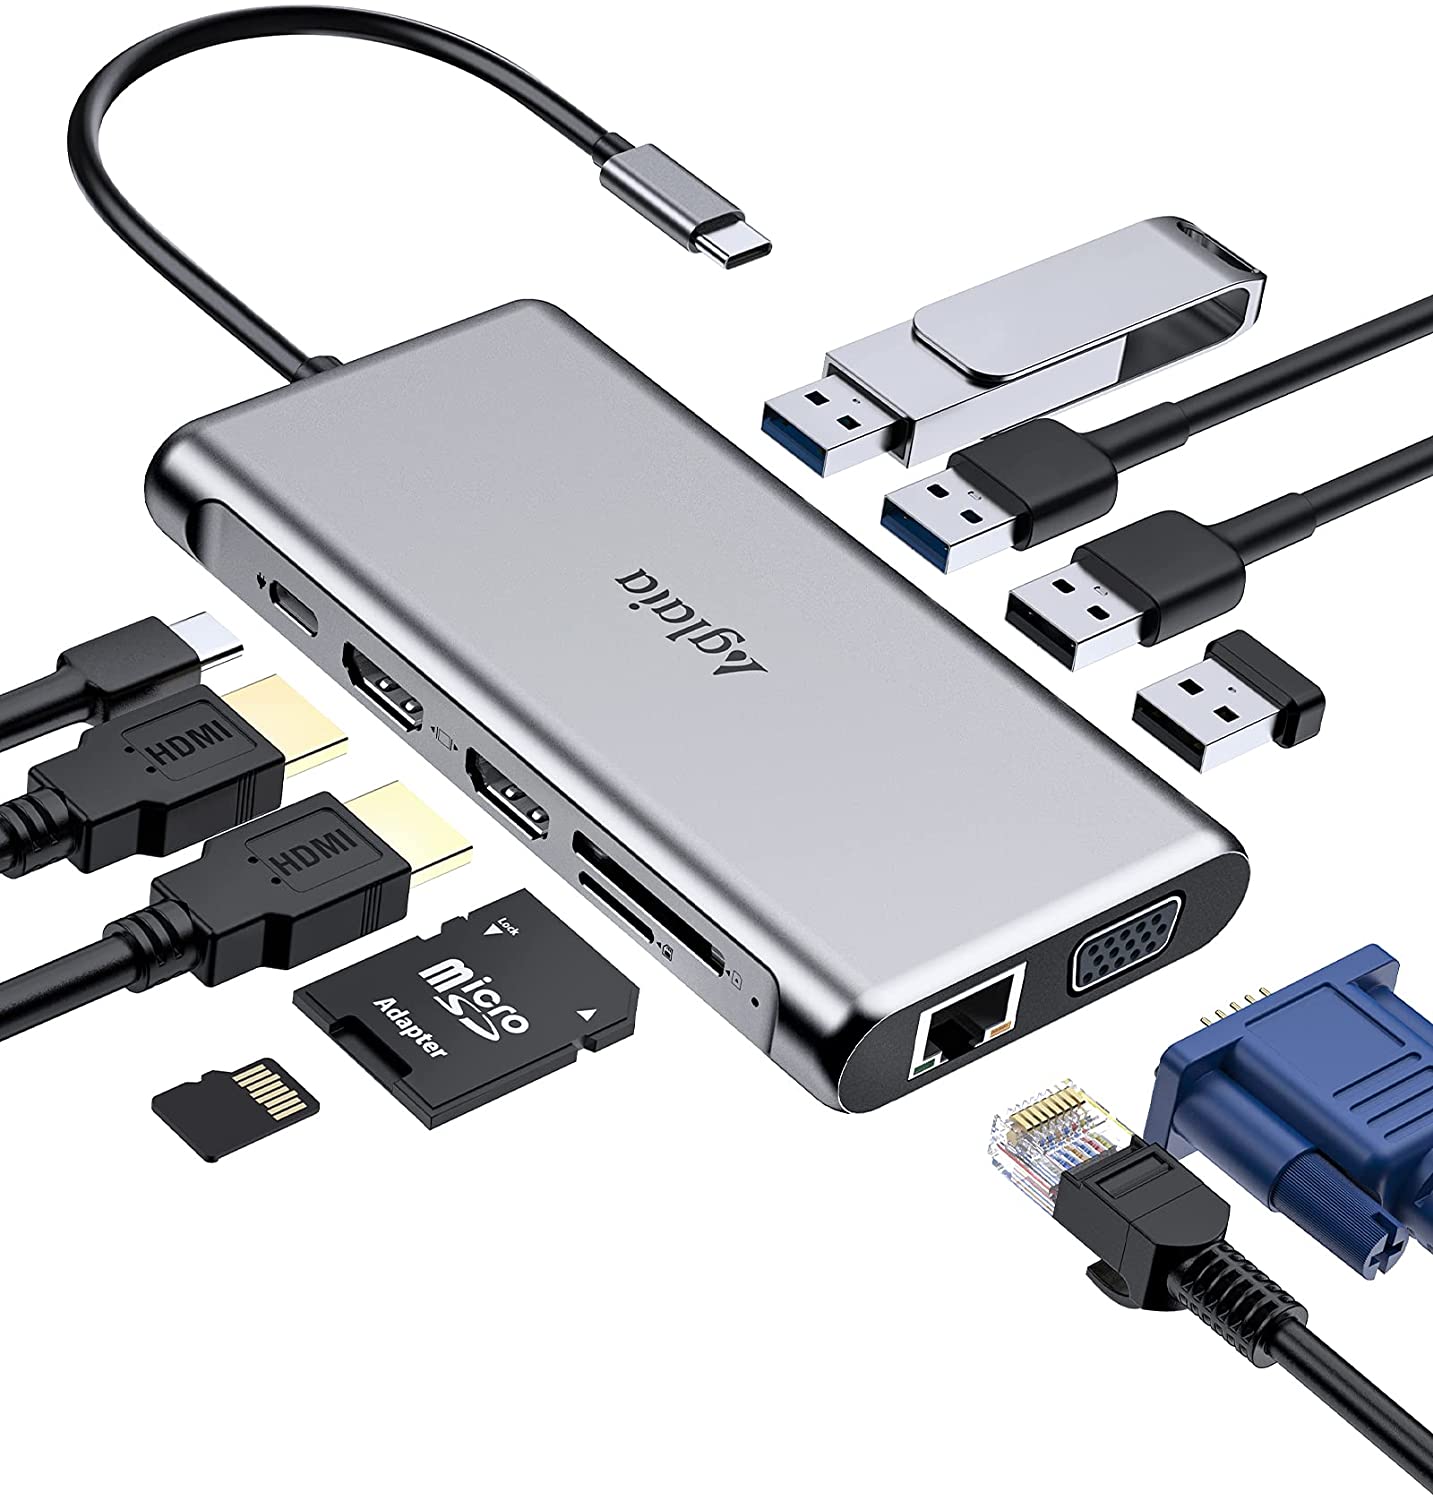 Bild zu Aglaia 12-in-1 USB-C Hub mit Gigabit Ethernet und Kartenleser für 48,99€